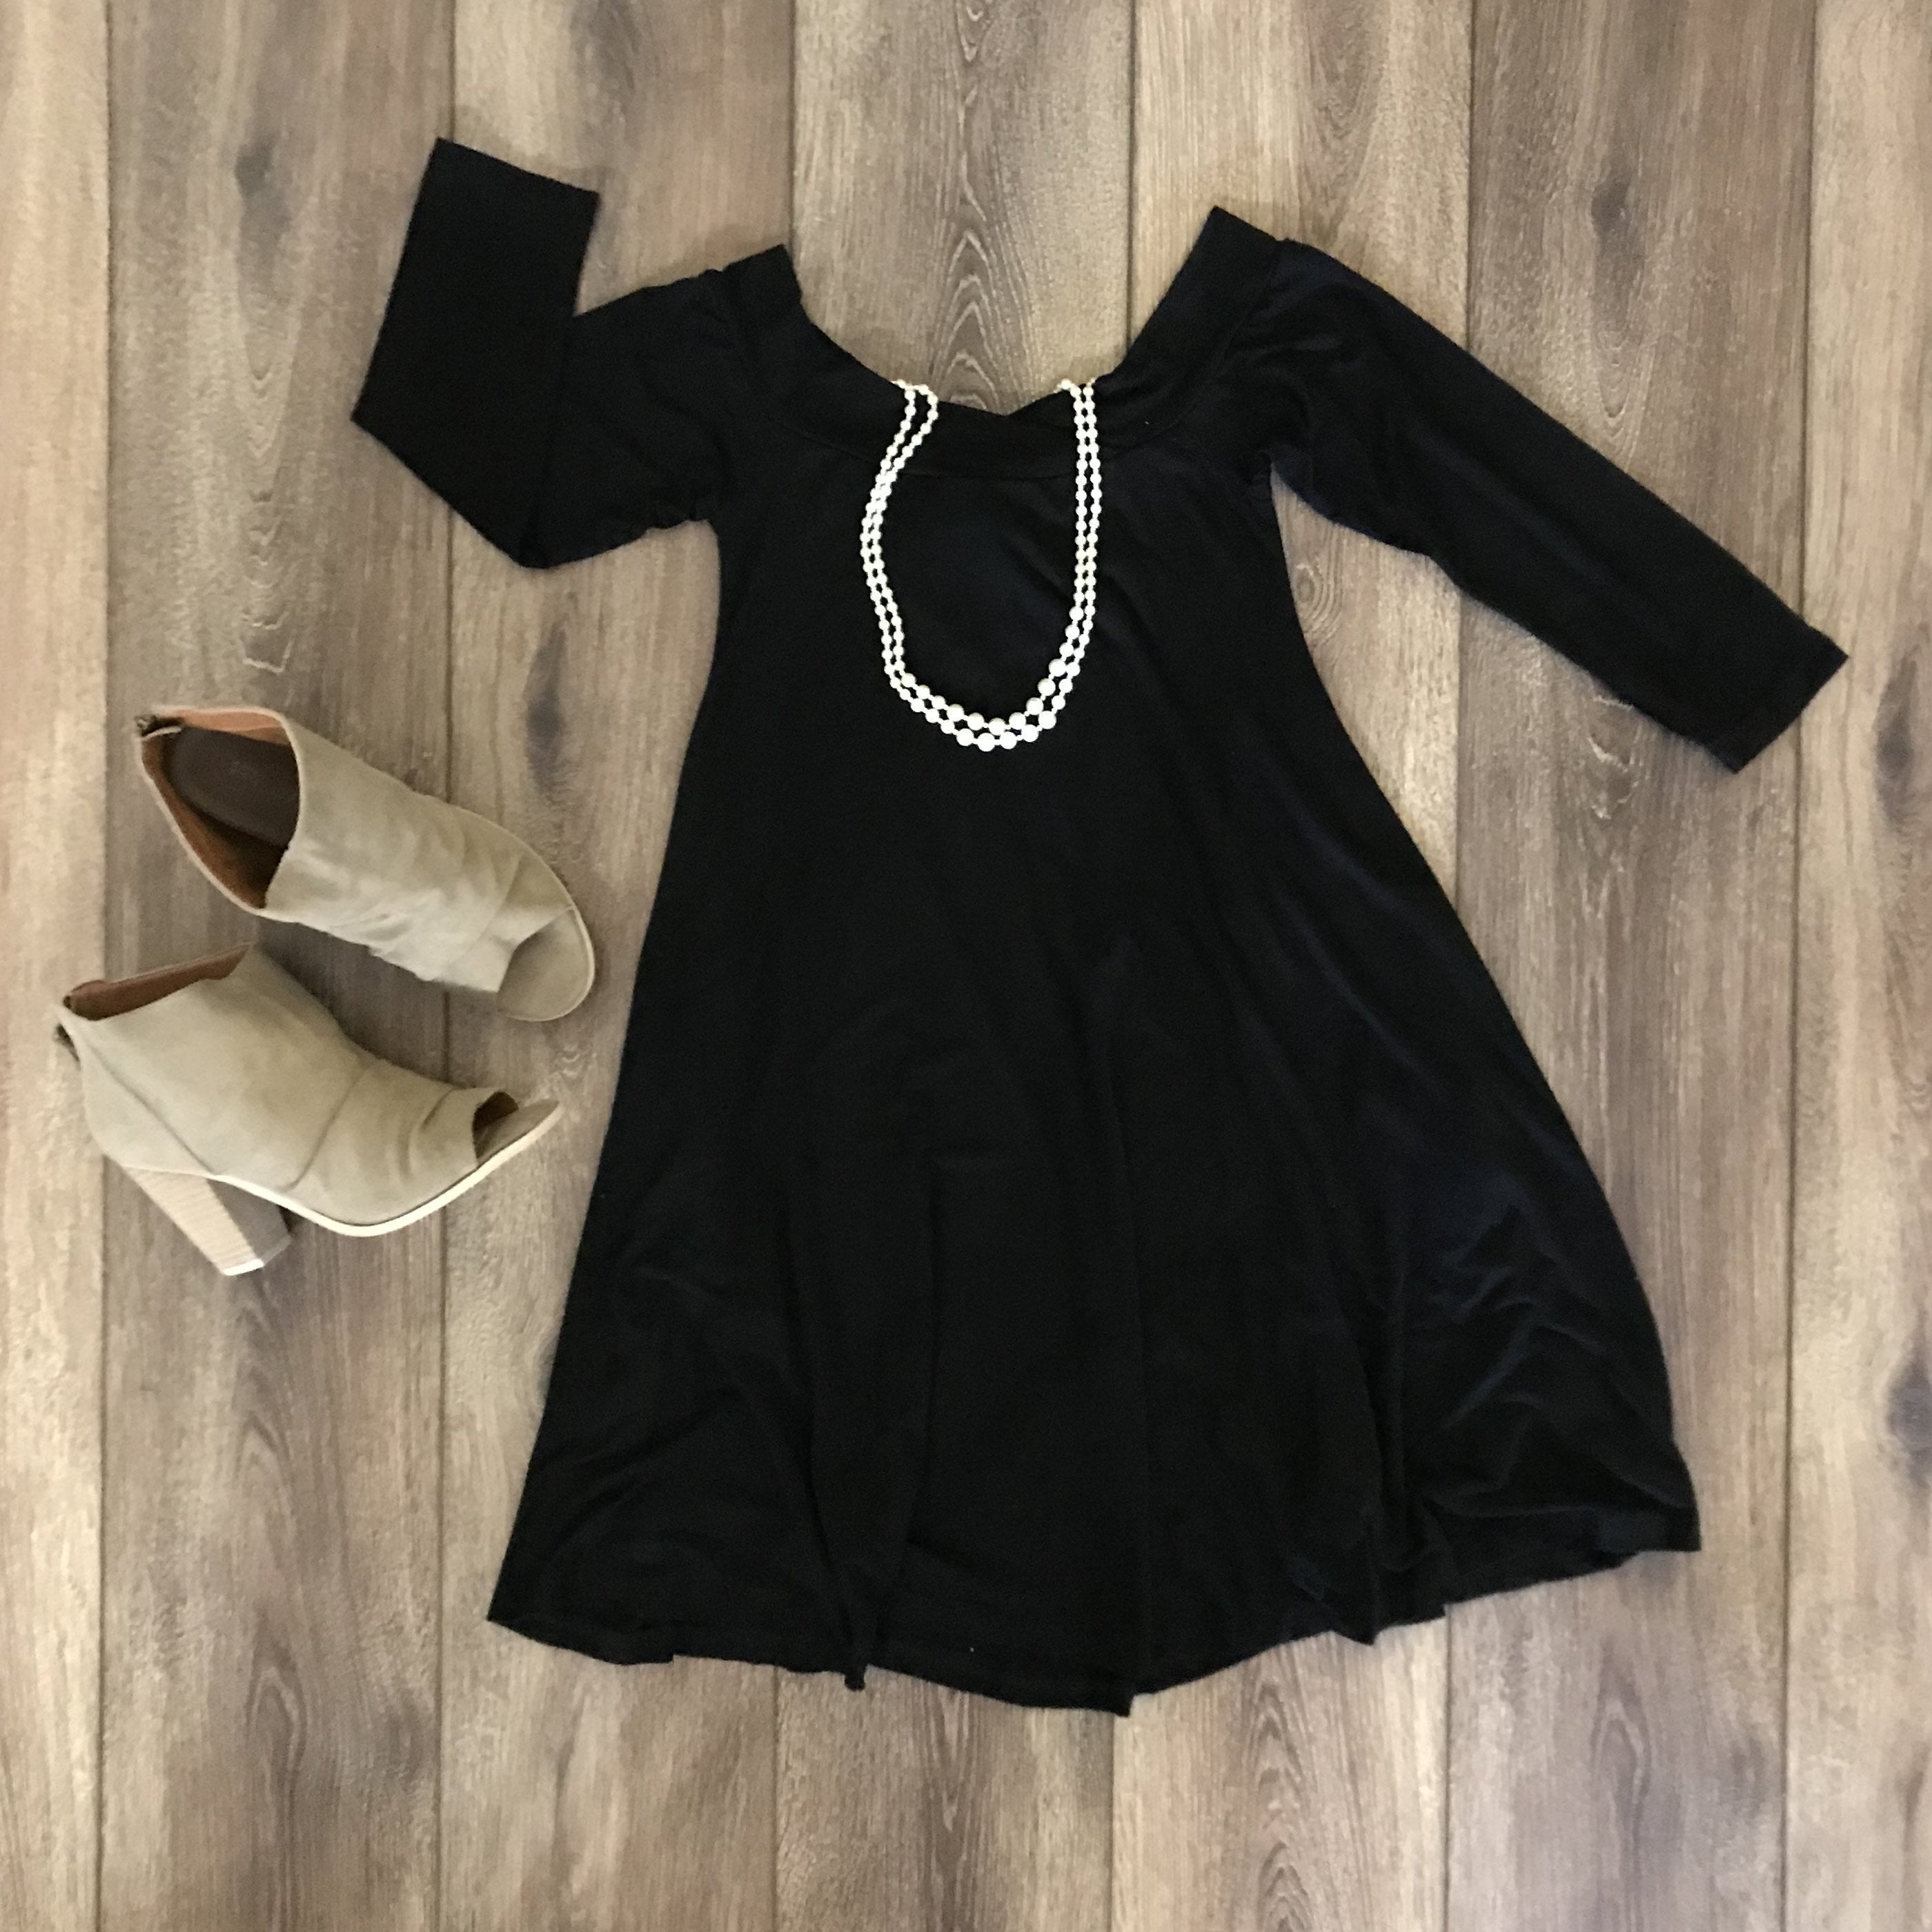 First Date Dress In Black